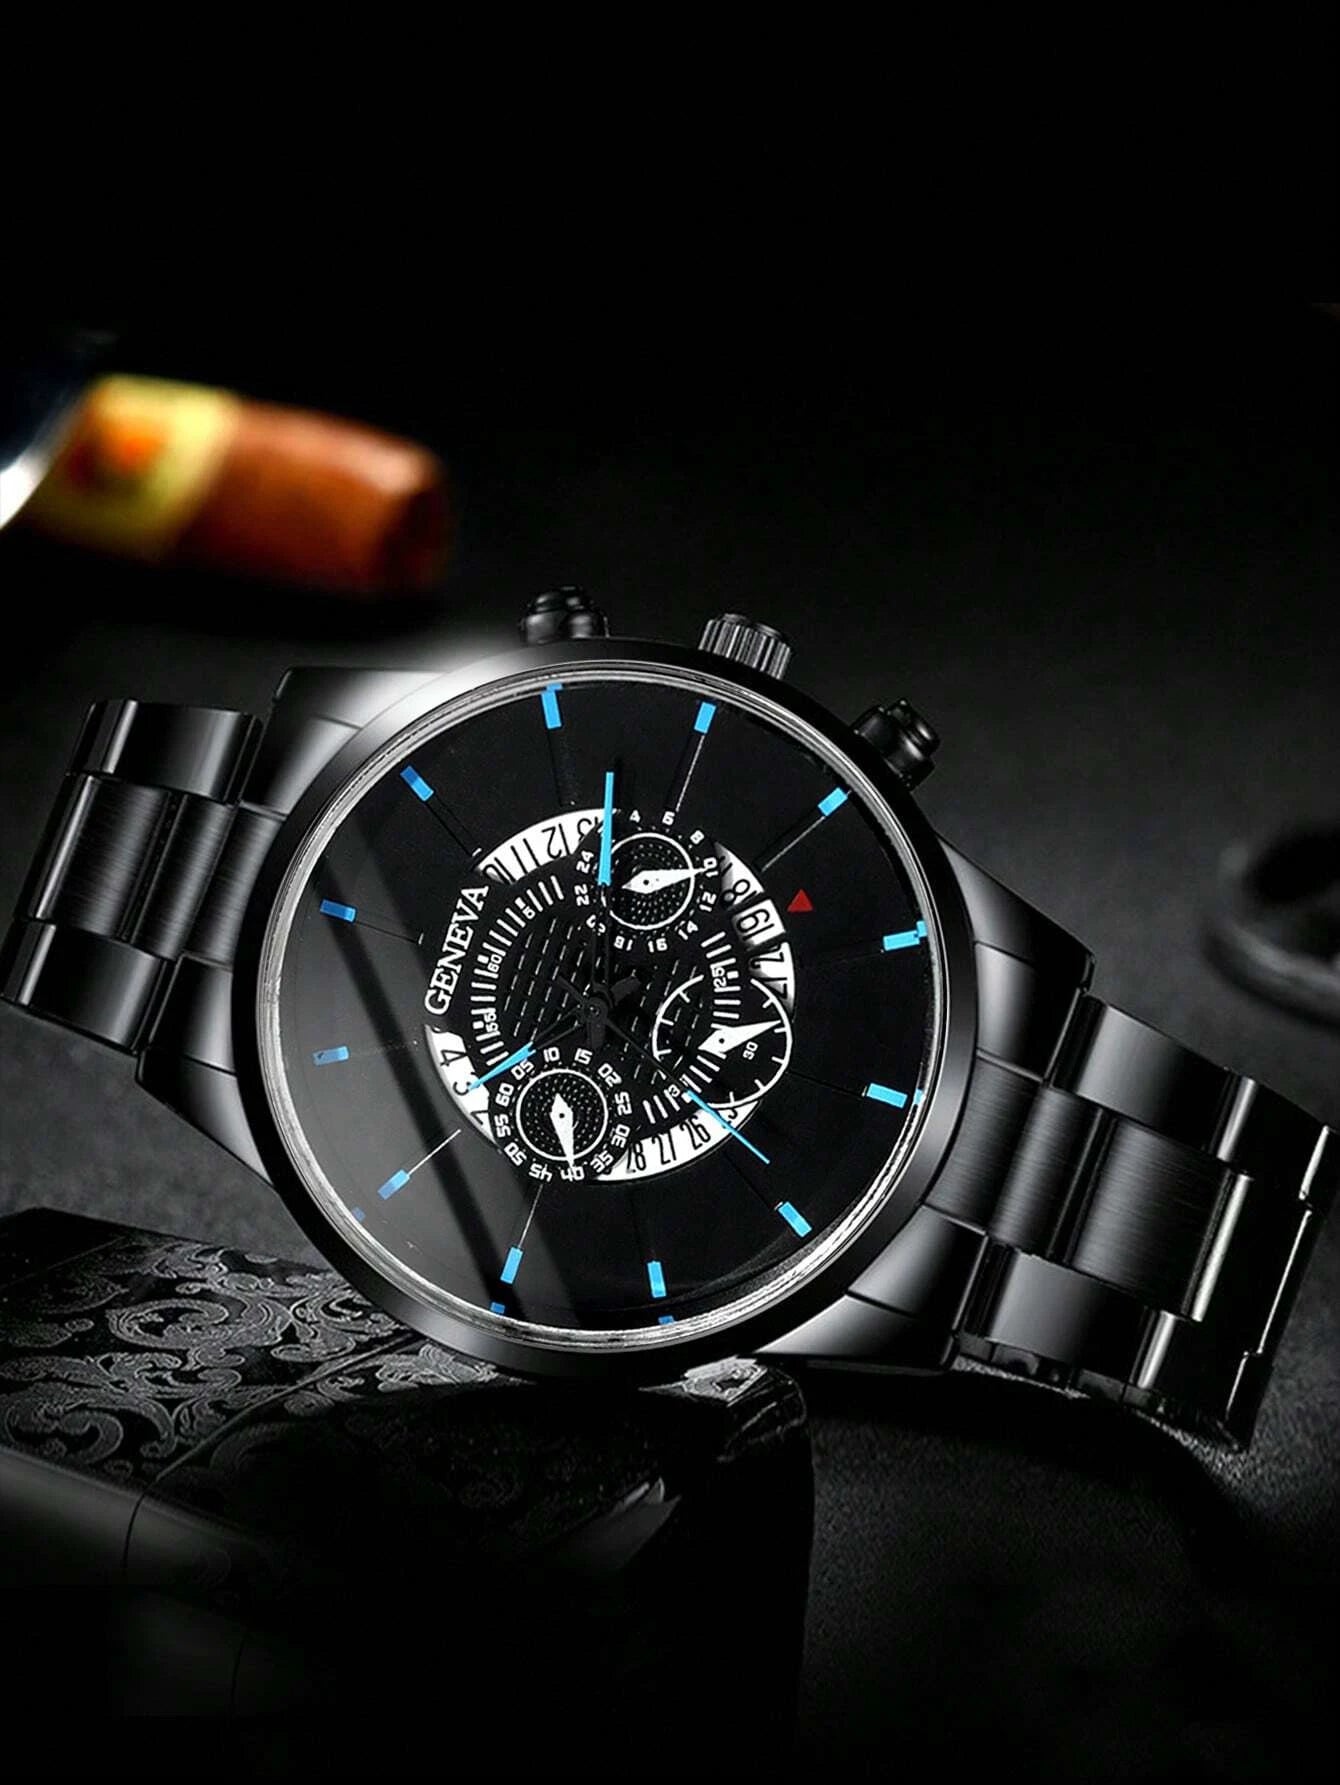 1pc Men Black Zinc Alloy Strap Business Date Round Dial Quartz Watch & 1pc Bracelet, For Daily Life